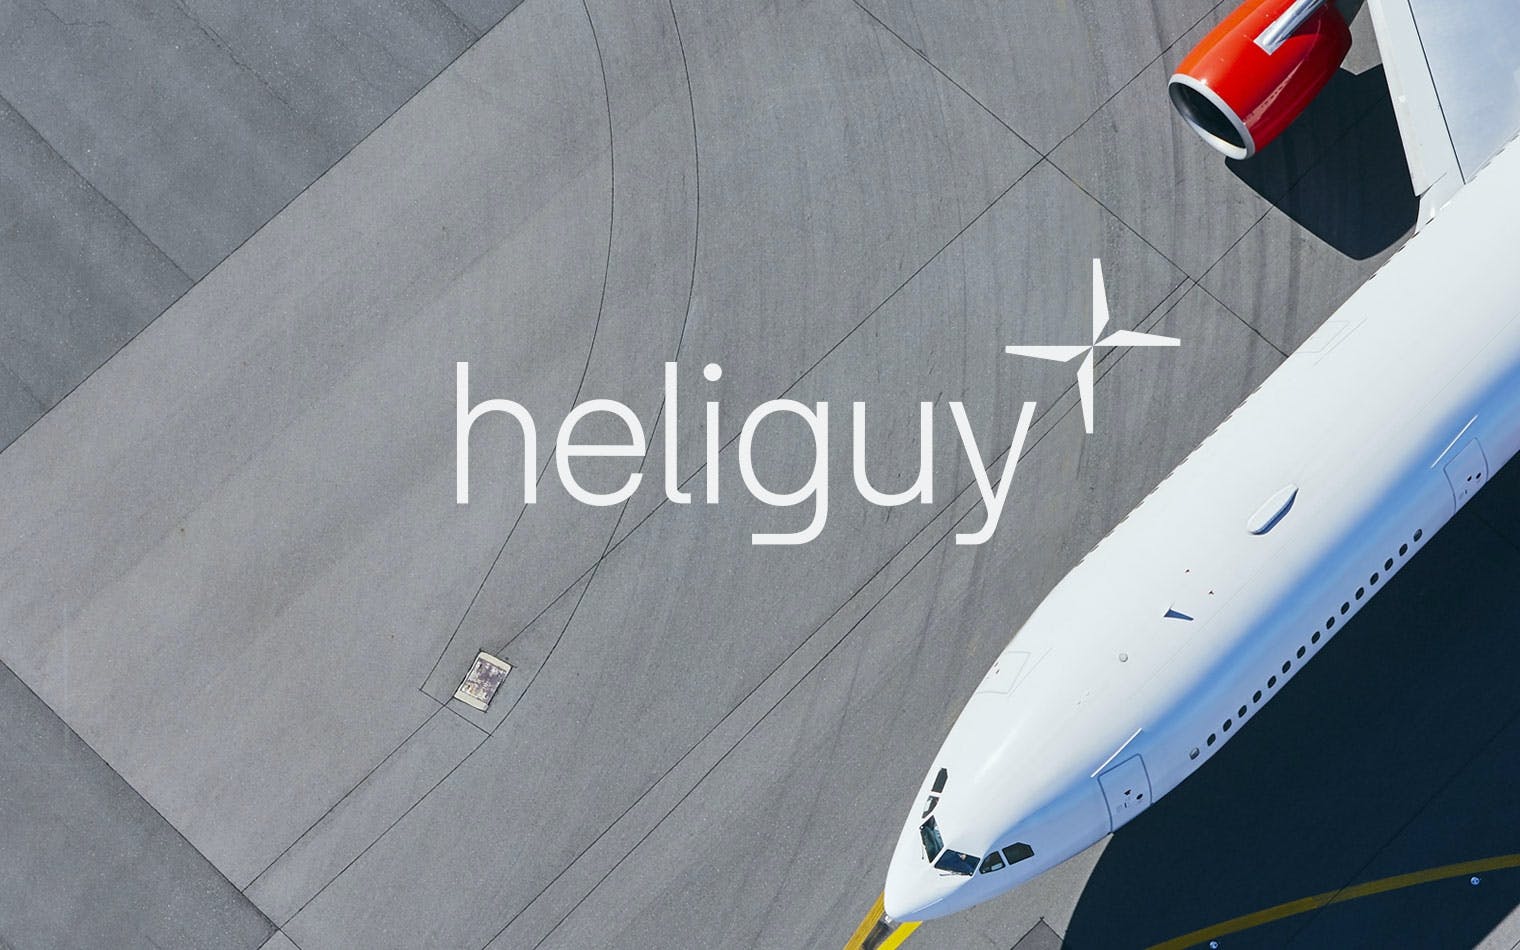 Heliguy | Steve Edge Design